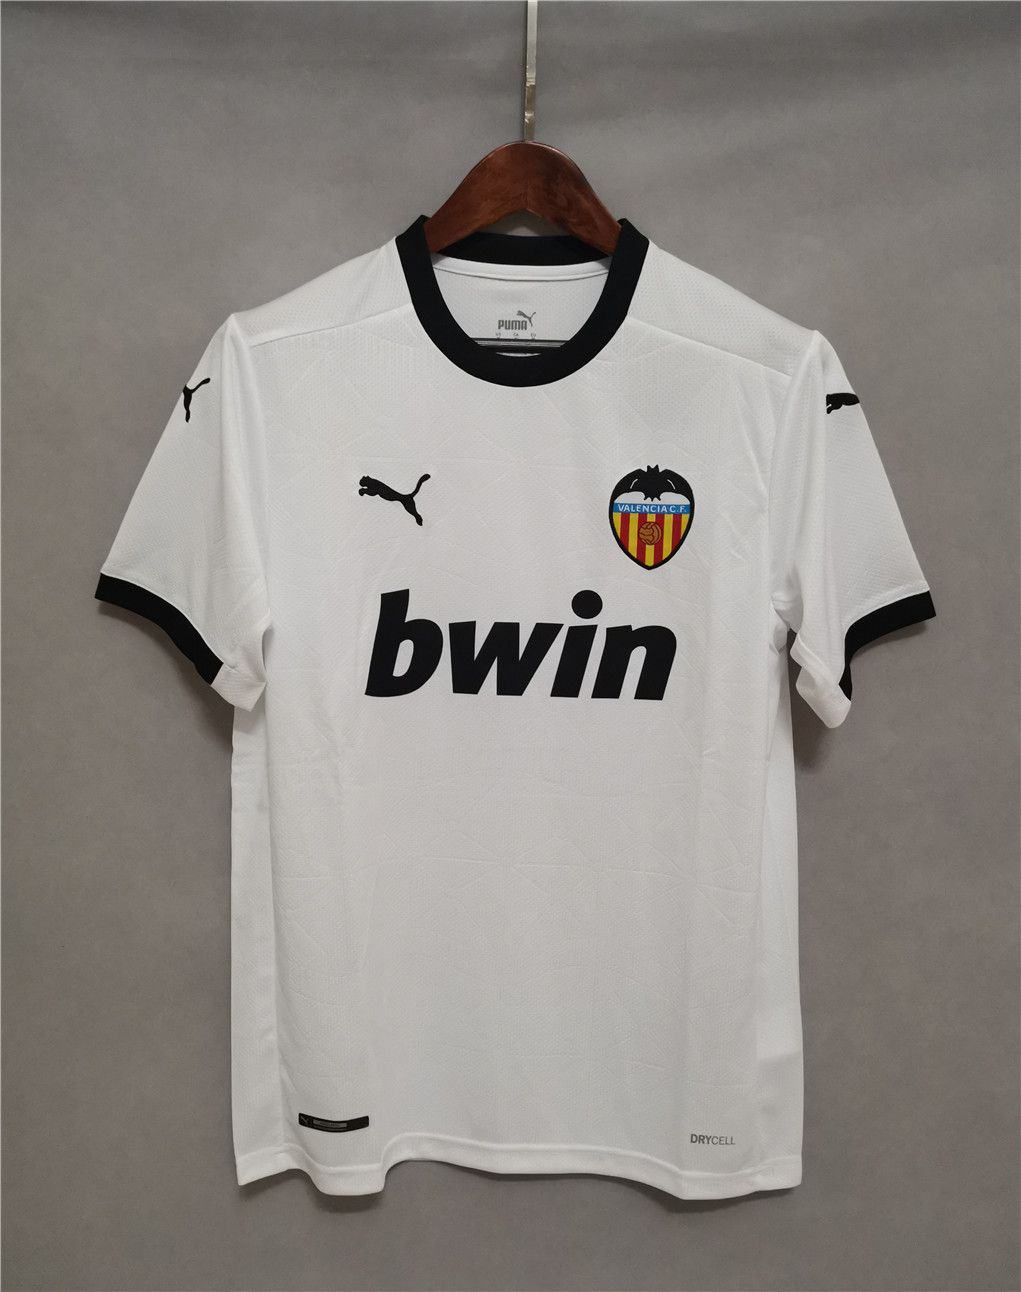 Camiseta Valencia CF 20-21 Away – Offsidex